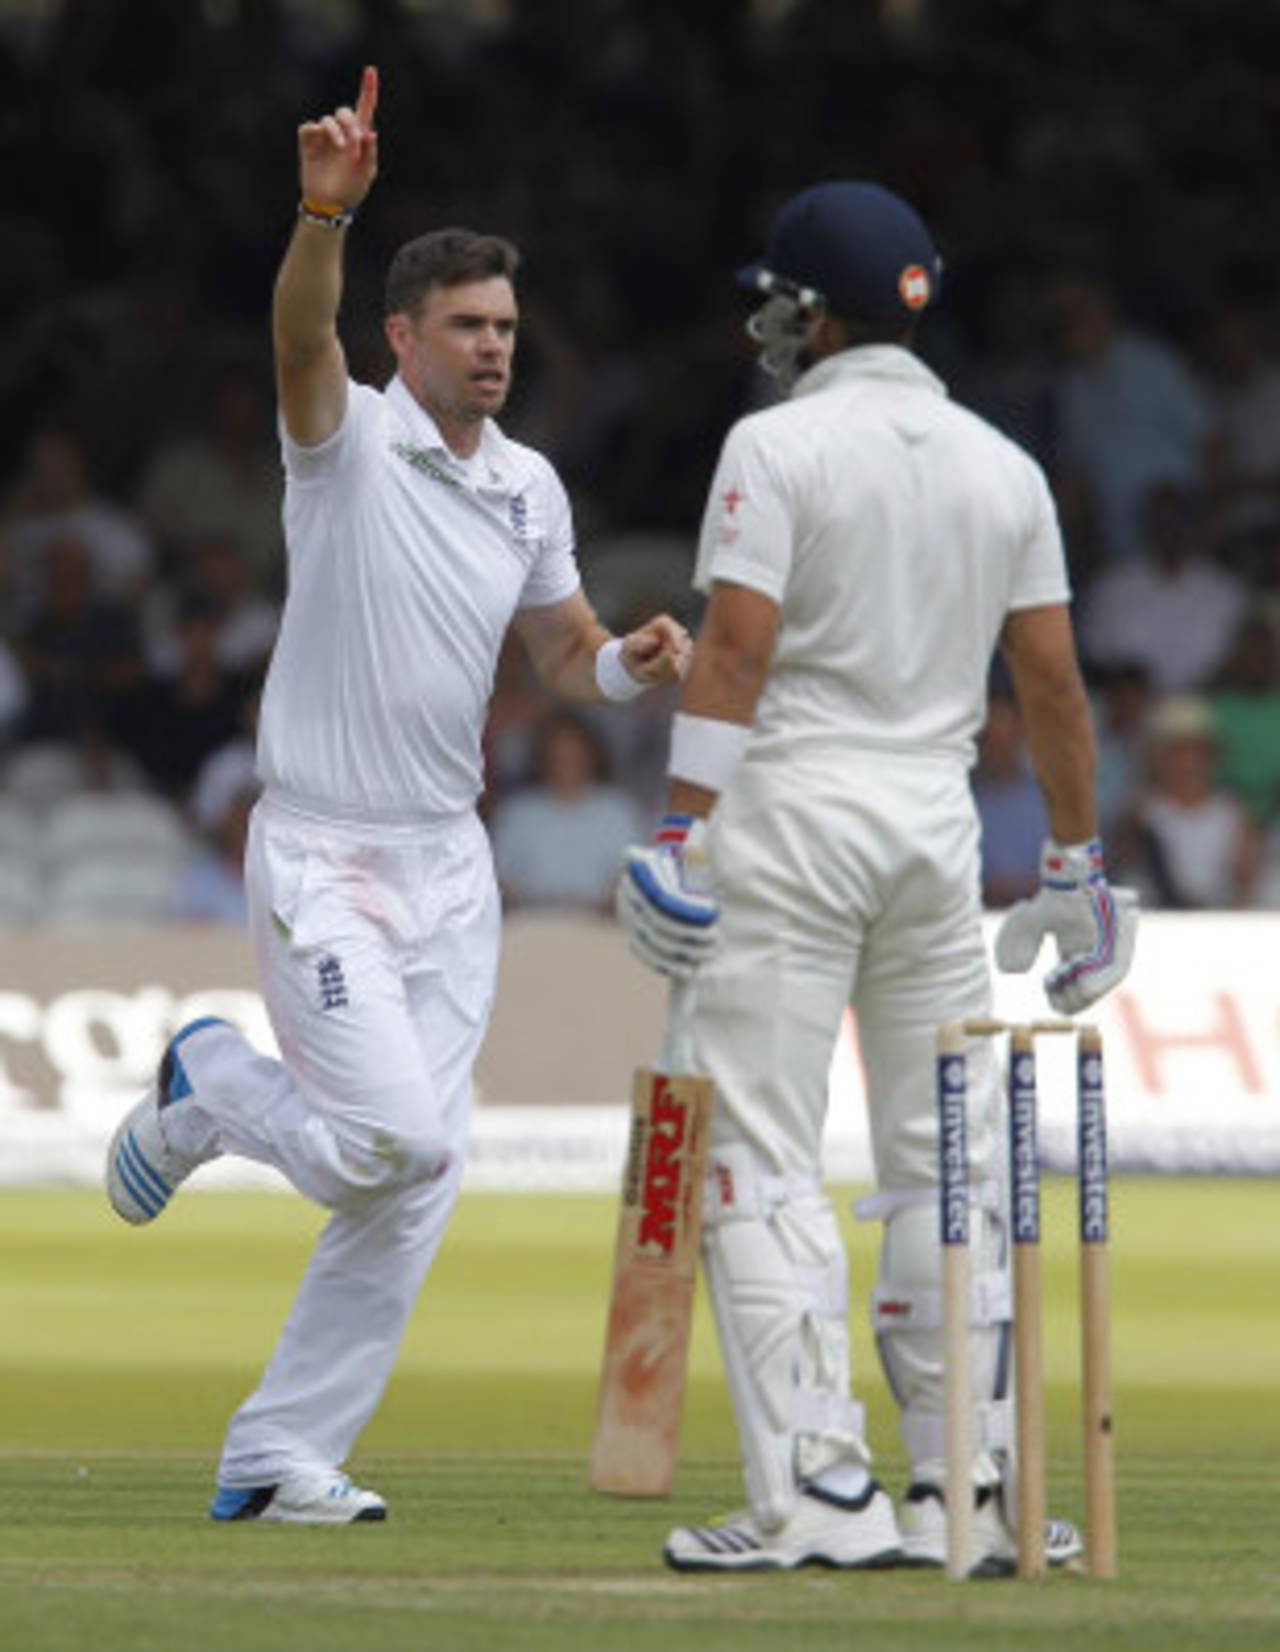 James Anderson exults after dismissing Virat Kohli, England v India, 2nd Investec Test, Lord's, 1st day, July 17, 2014